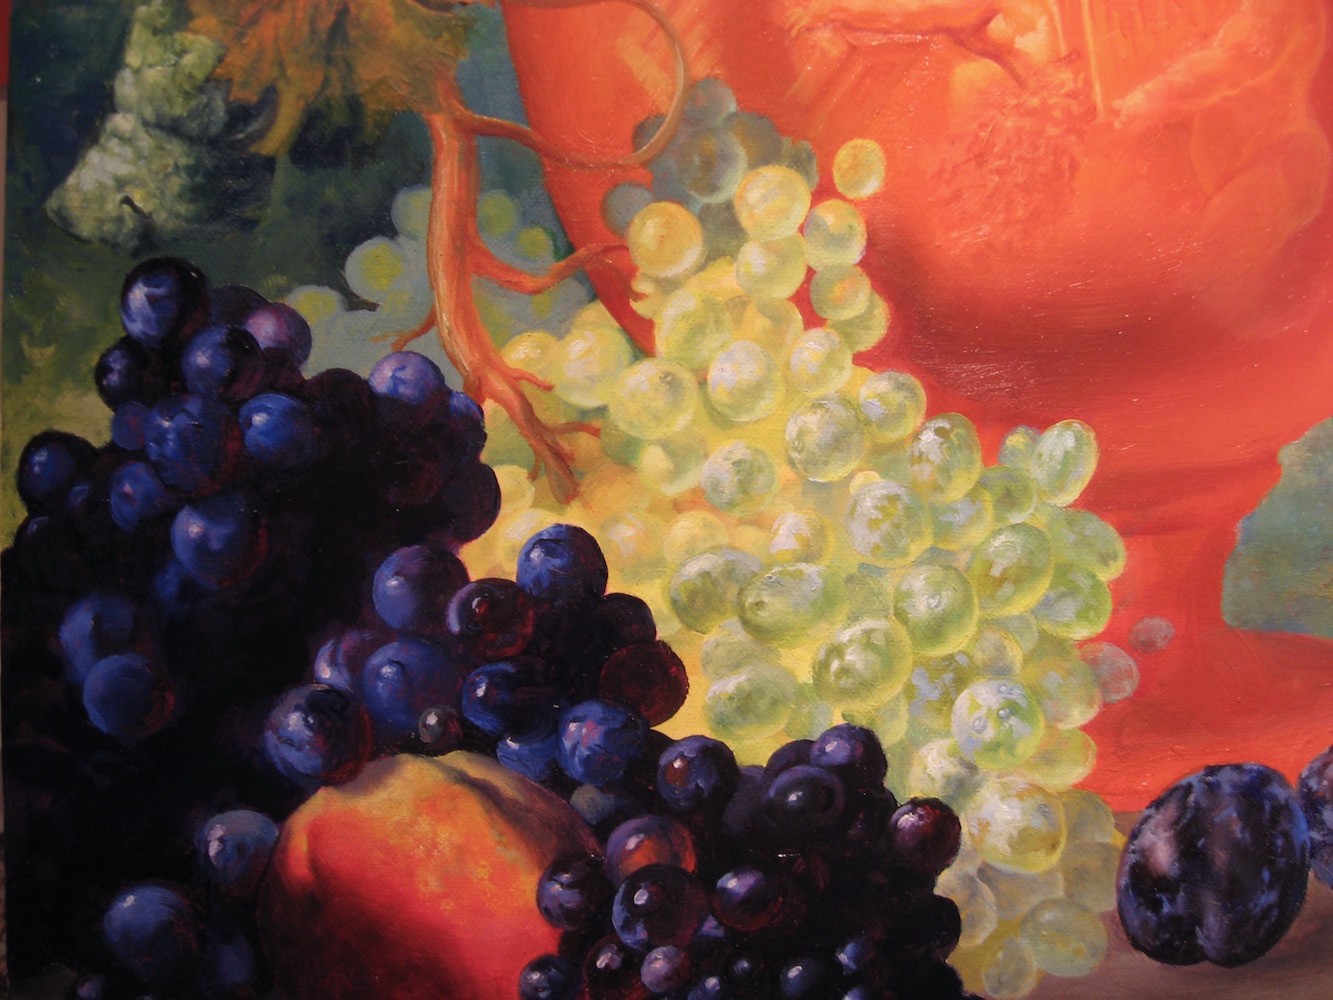 Tea Party - detail, grapes